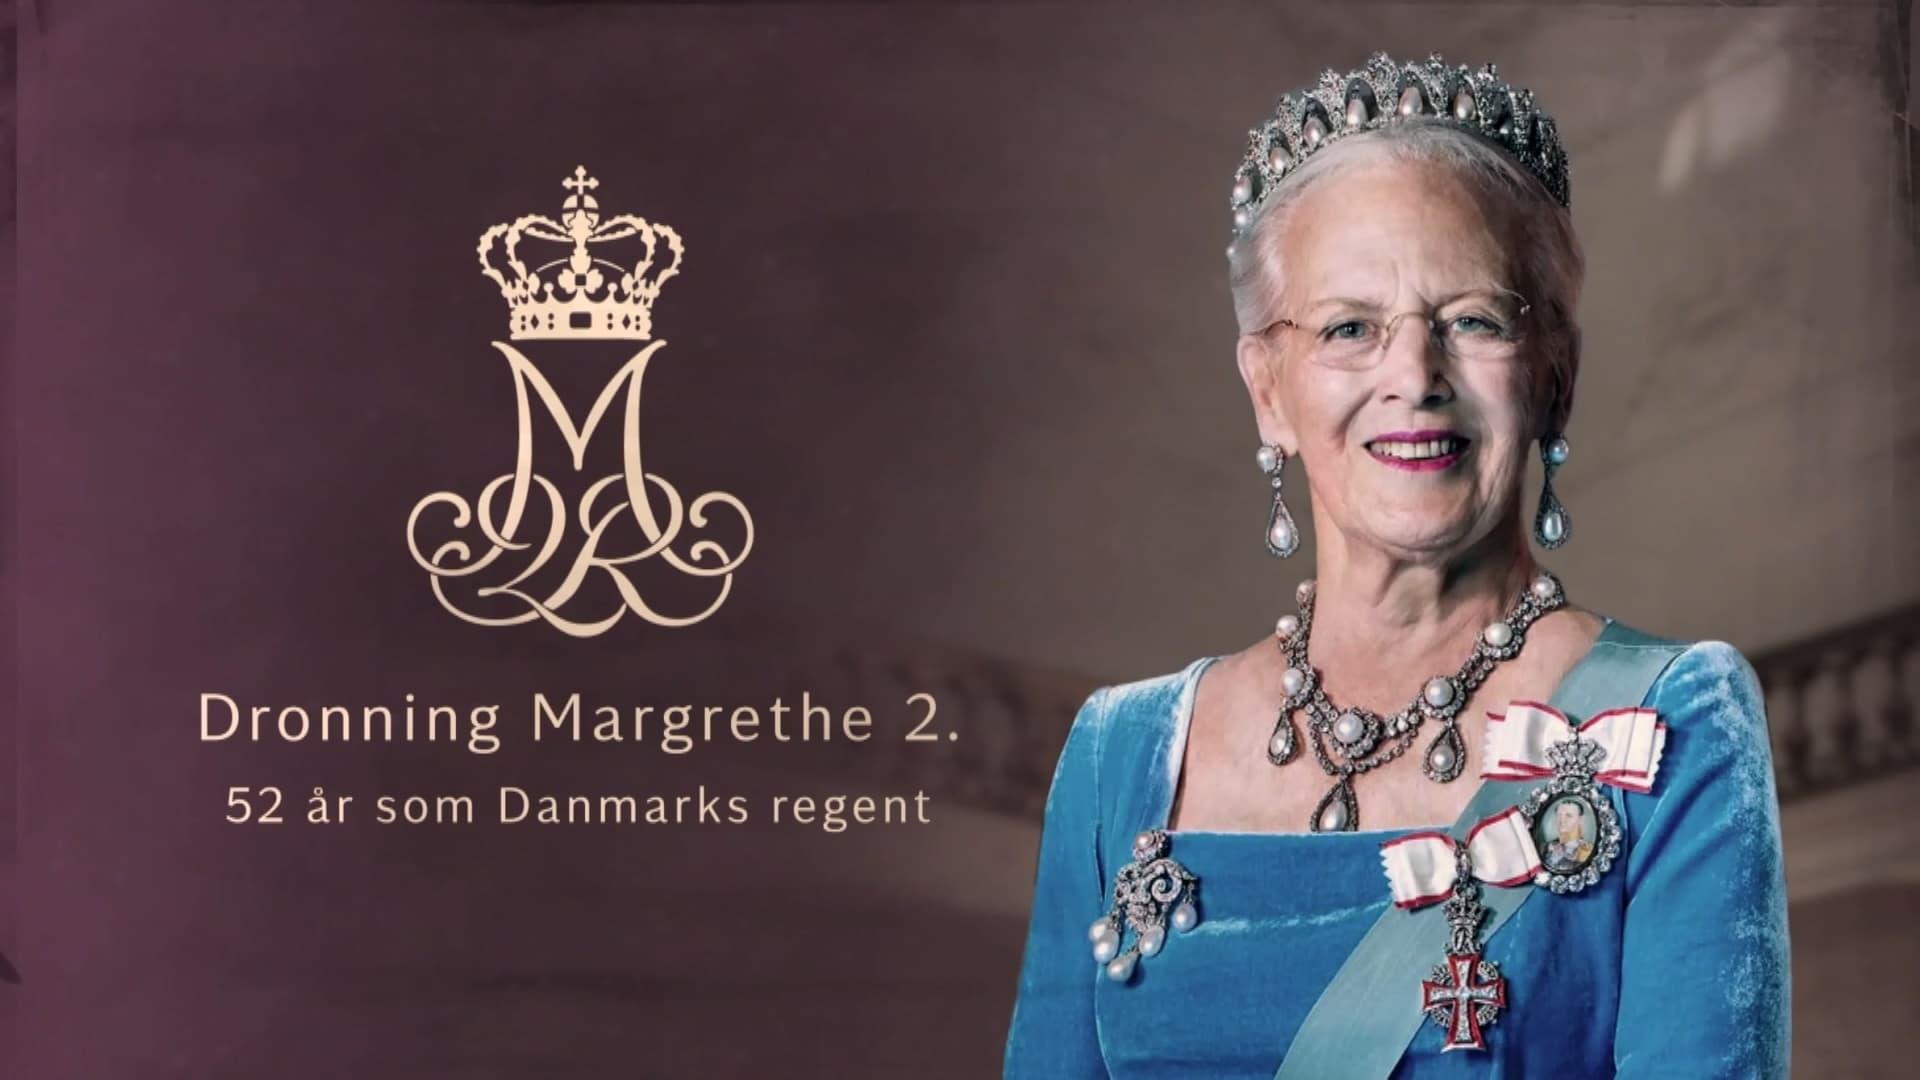 Queen Margrethe II of Denmark backdrop